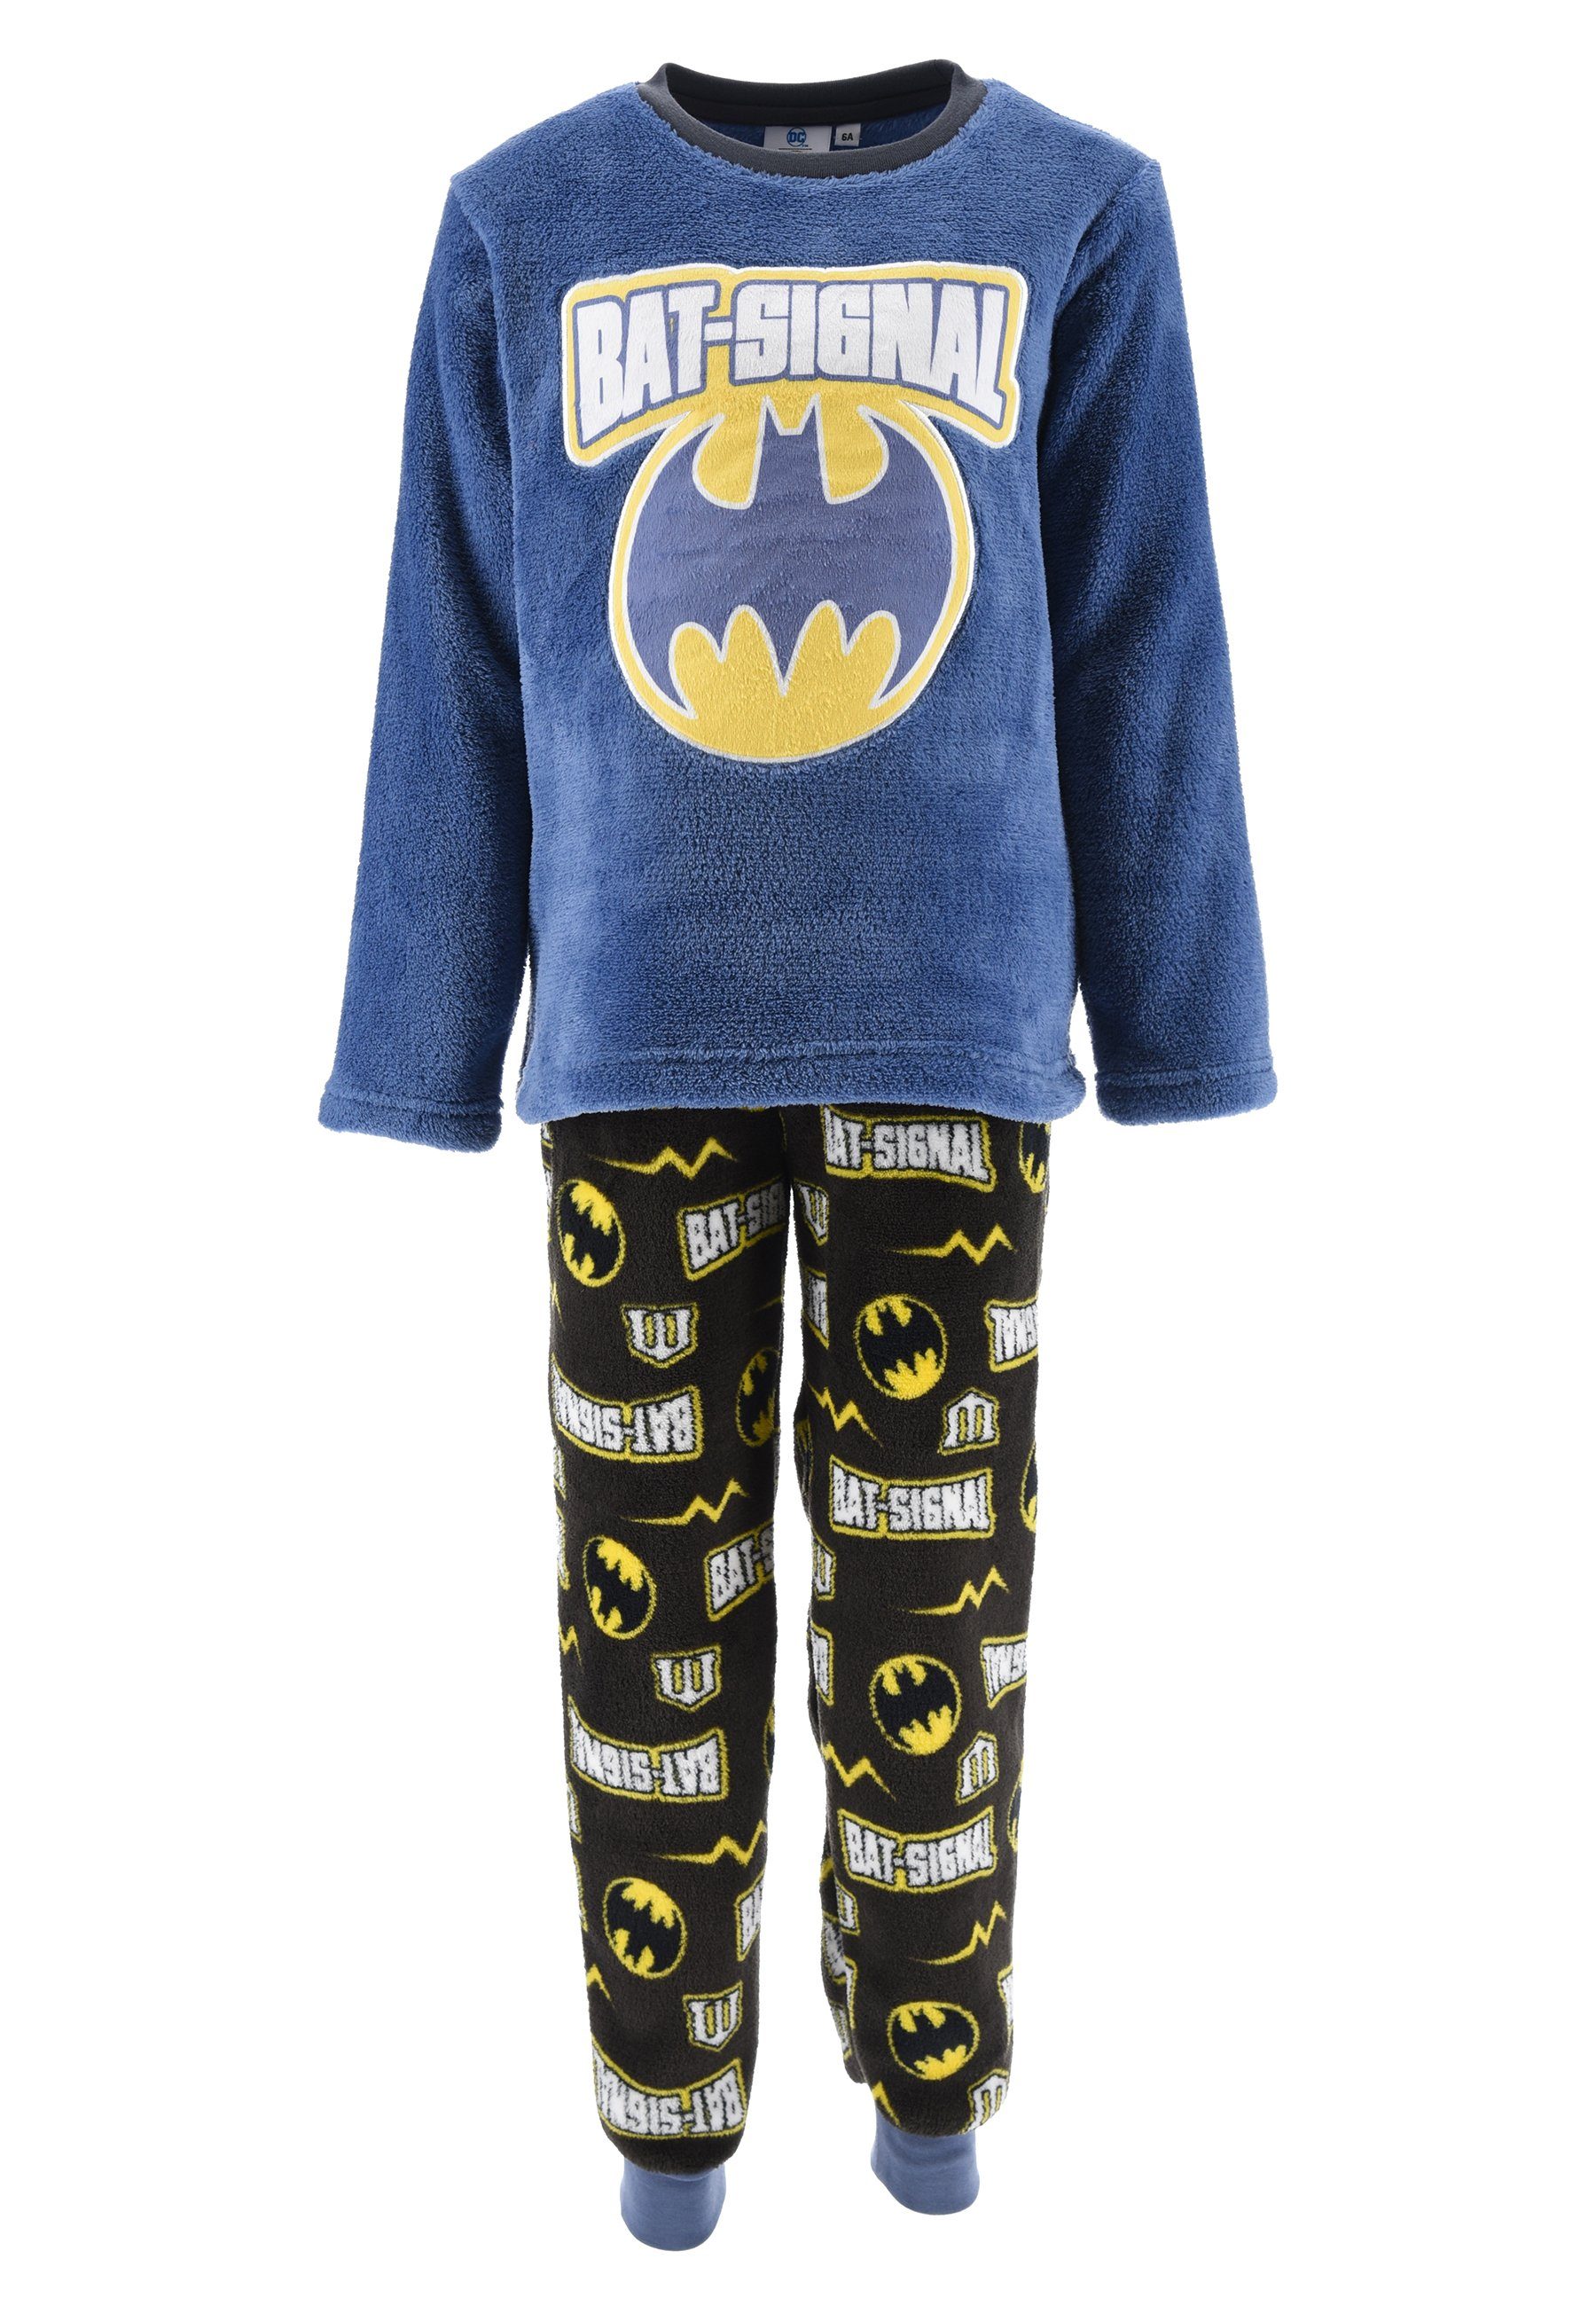 ONOMATO! Schlafanzug Bat-Signal Kinder Jungen Pyjama langarm Nachtwäsche (2 tlg) Blau